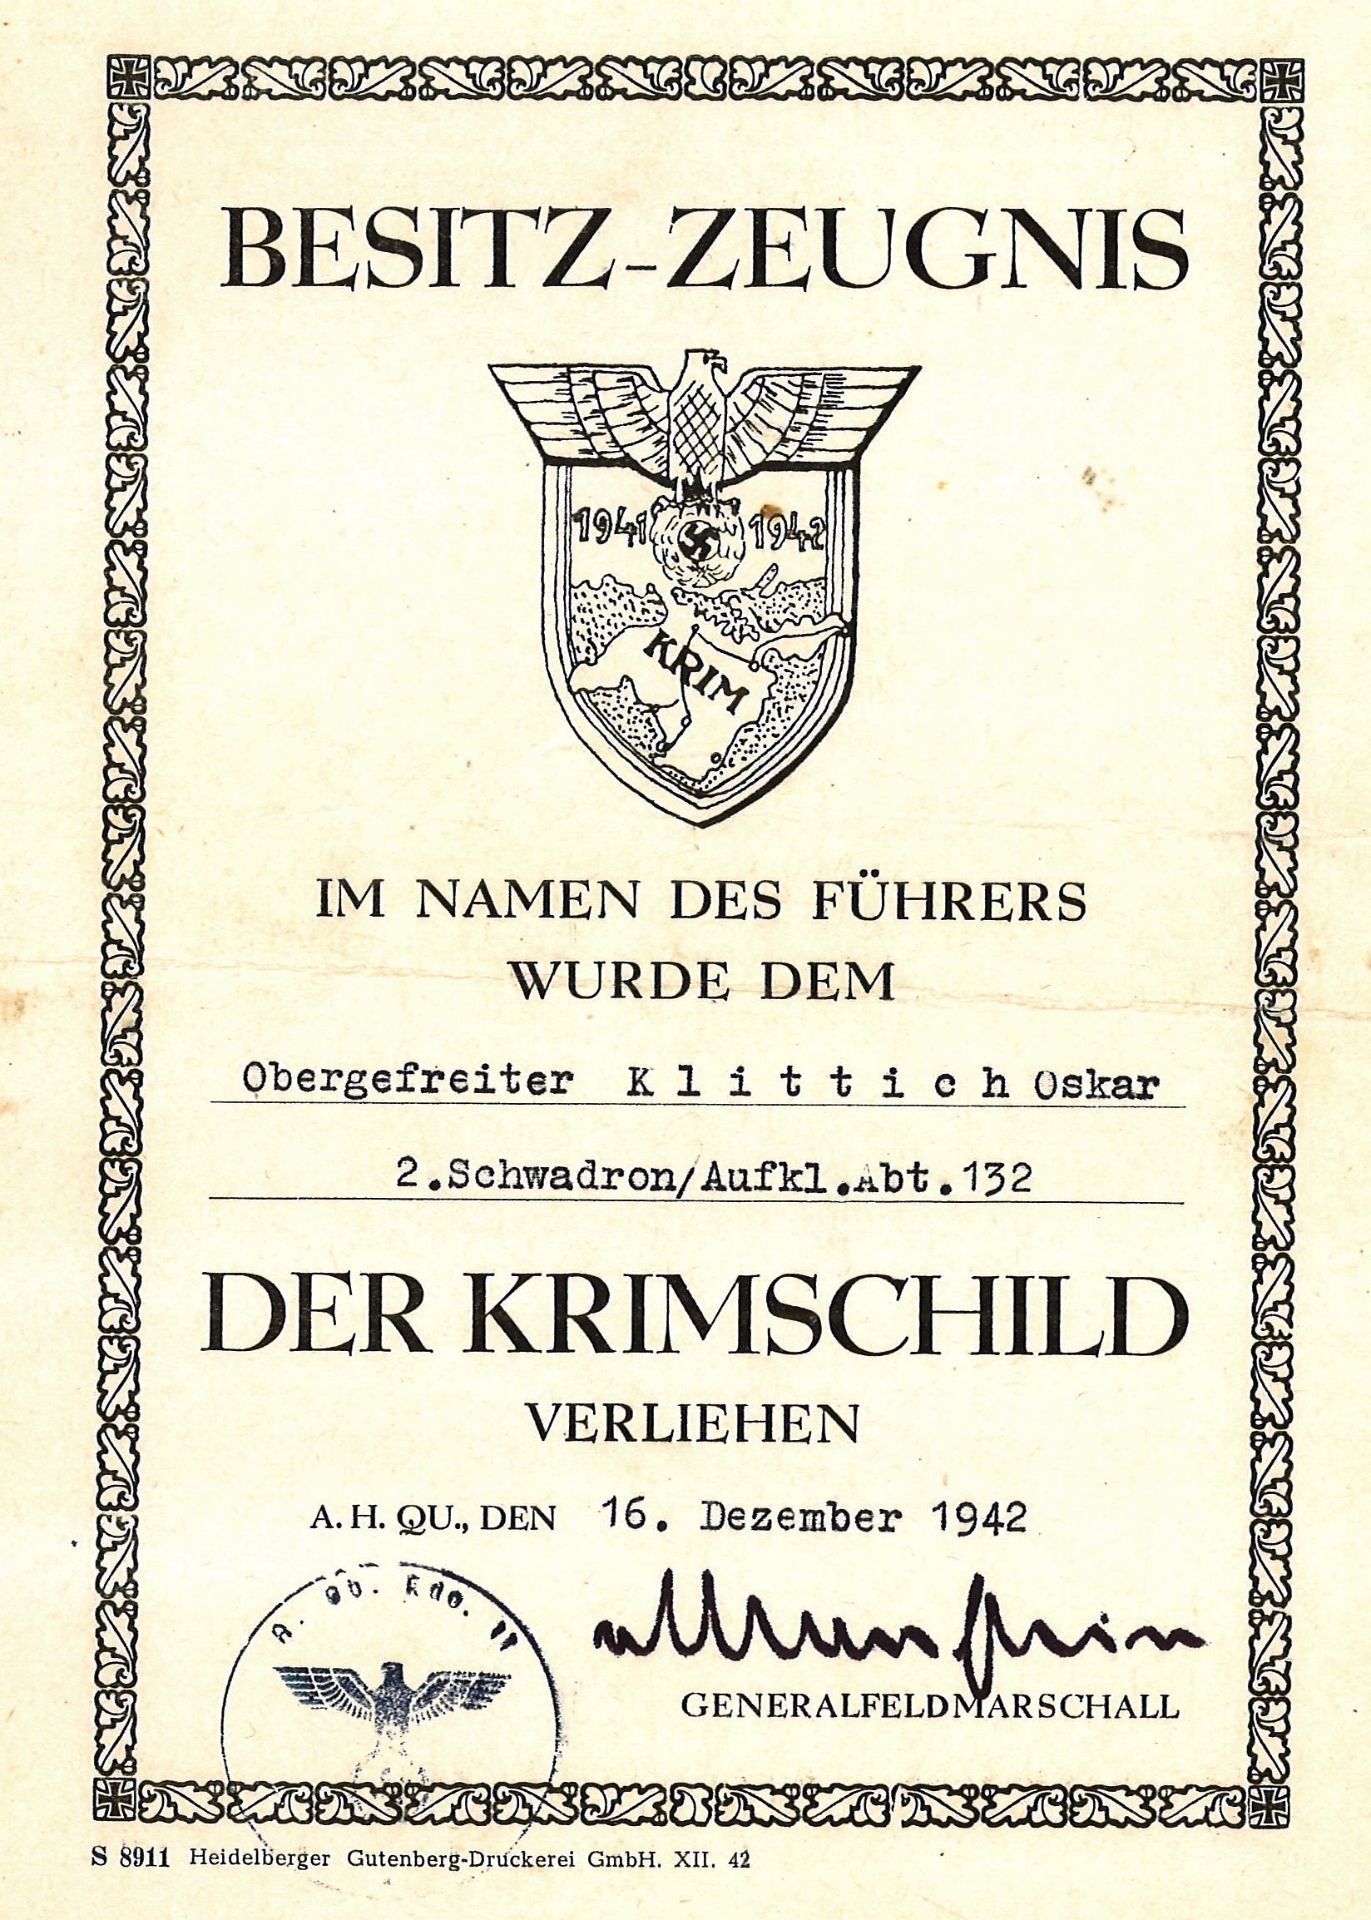 Besitz-Zeugnis für Krimschild, Obergefreiter Klittich Oskar, 2. Schwadron/Aufkl. Abt. 132, 16.